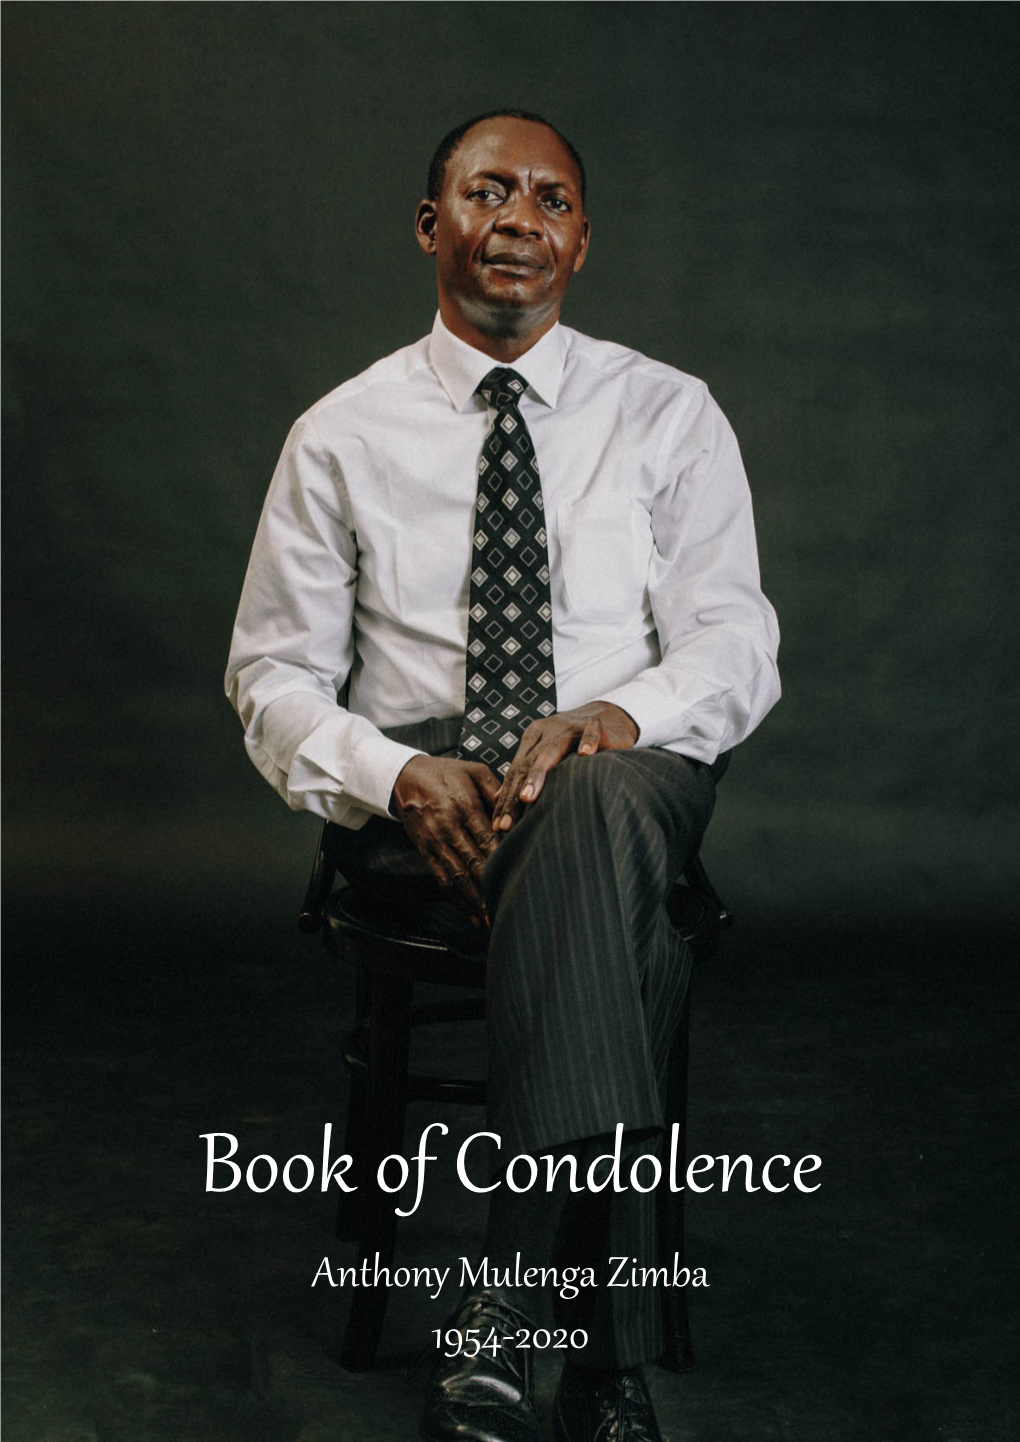 Read the Book of Condolence